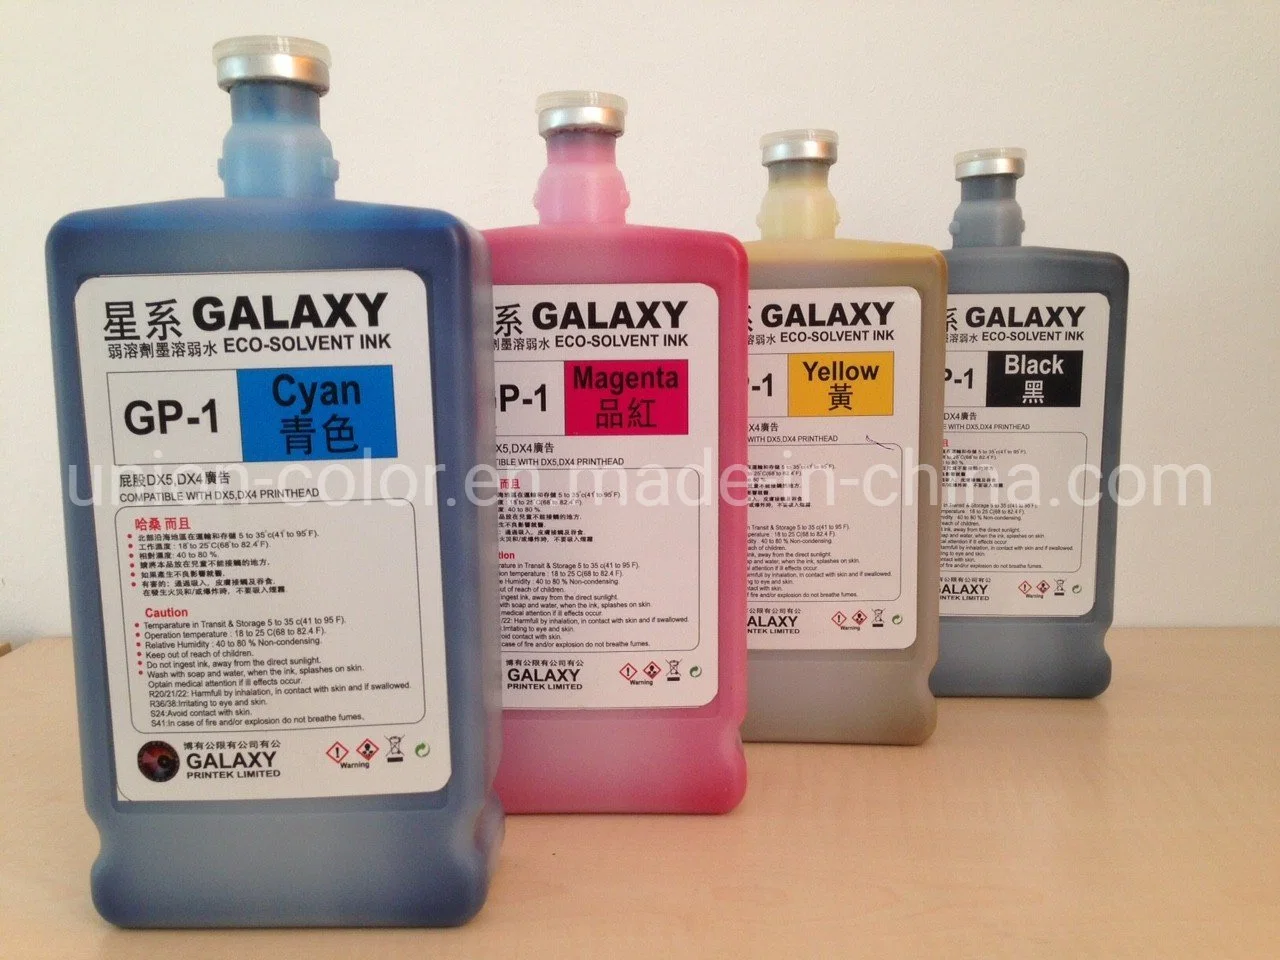 Galaxy Dye Ink Eco Solvent Ink für DX5-Kopf-Vinyl Sticker Flex PVC Pet Printing Ink Pigment Ink für Digital Drucker Tintenstrahl Drucker hergestellt in China Fabrik